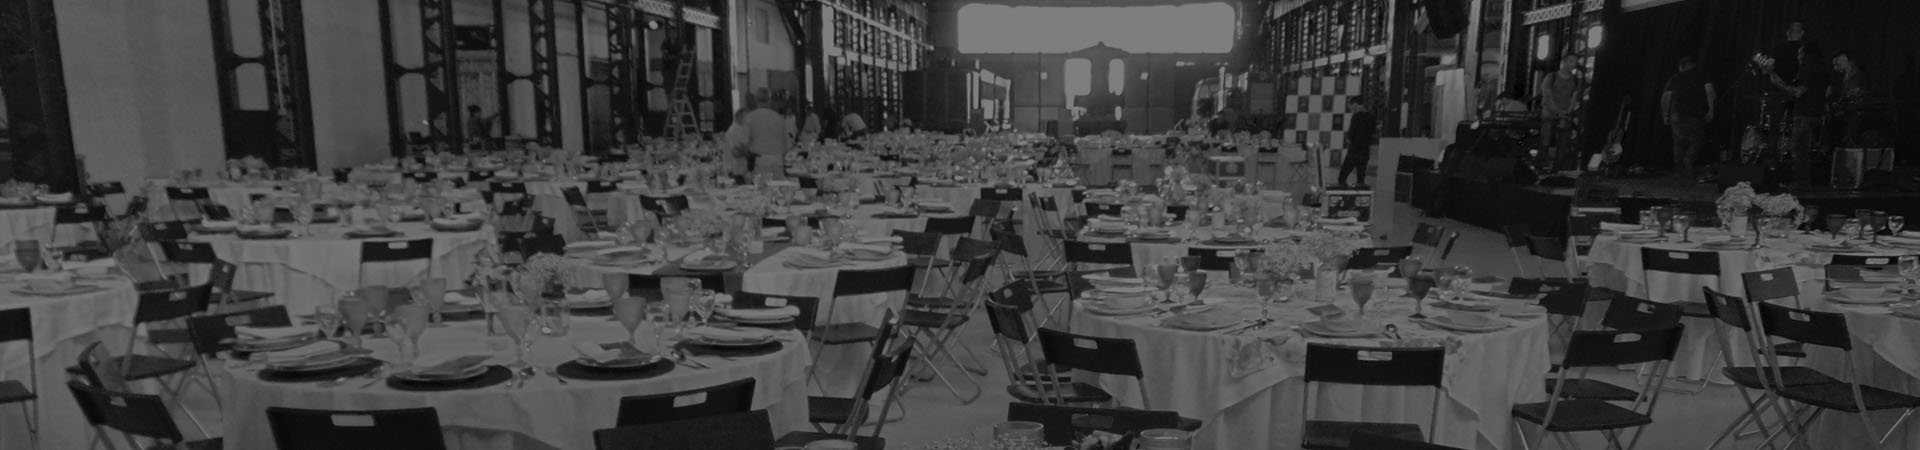 Fotografía de Oficinas do Vapor con mesas y sillas preparados para albergar un banquete